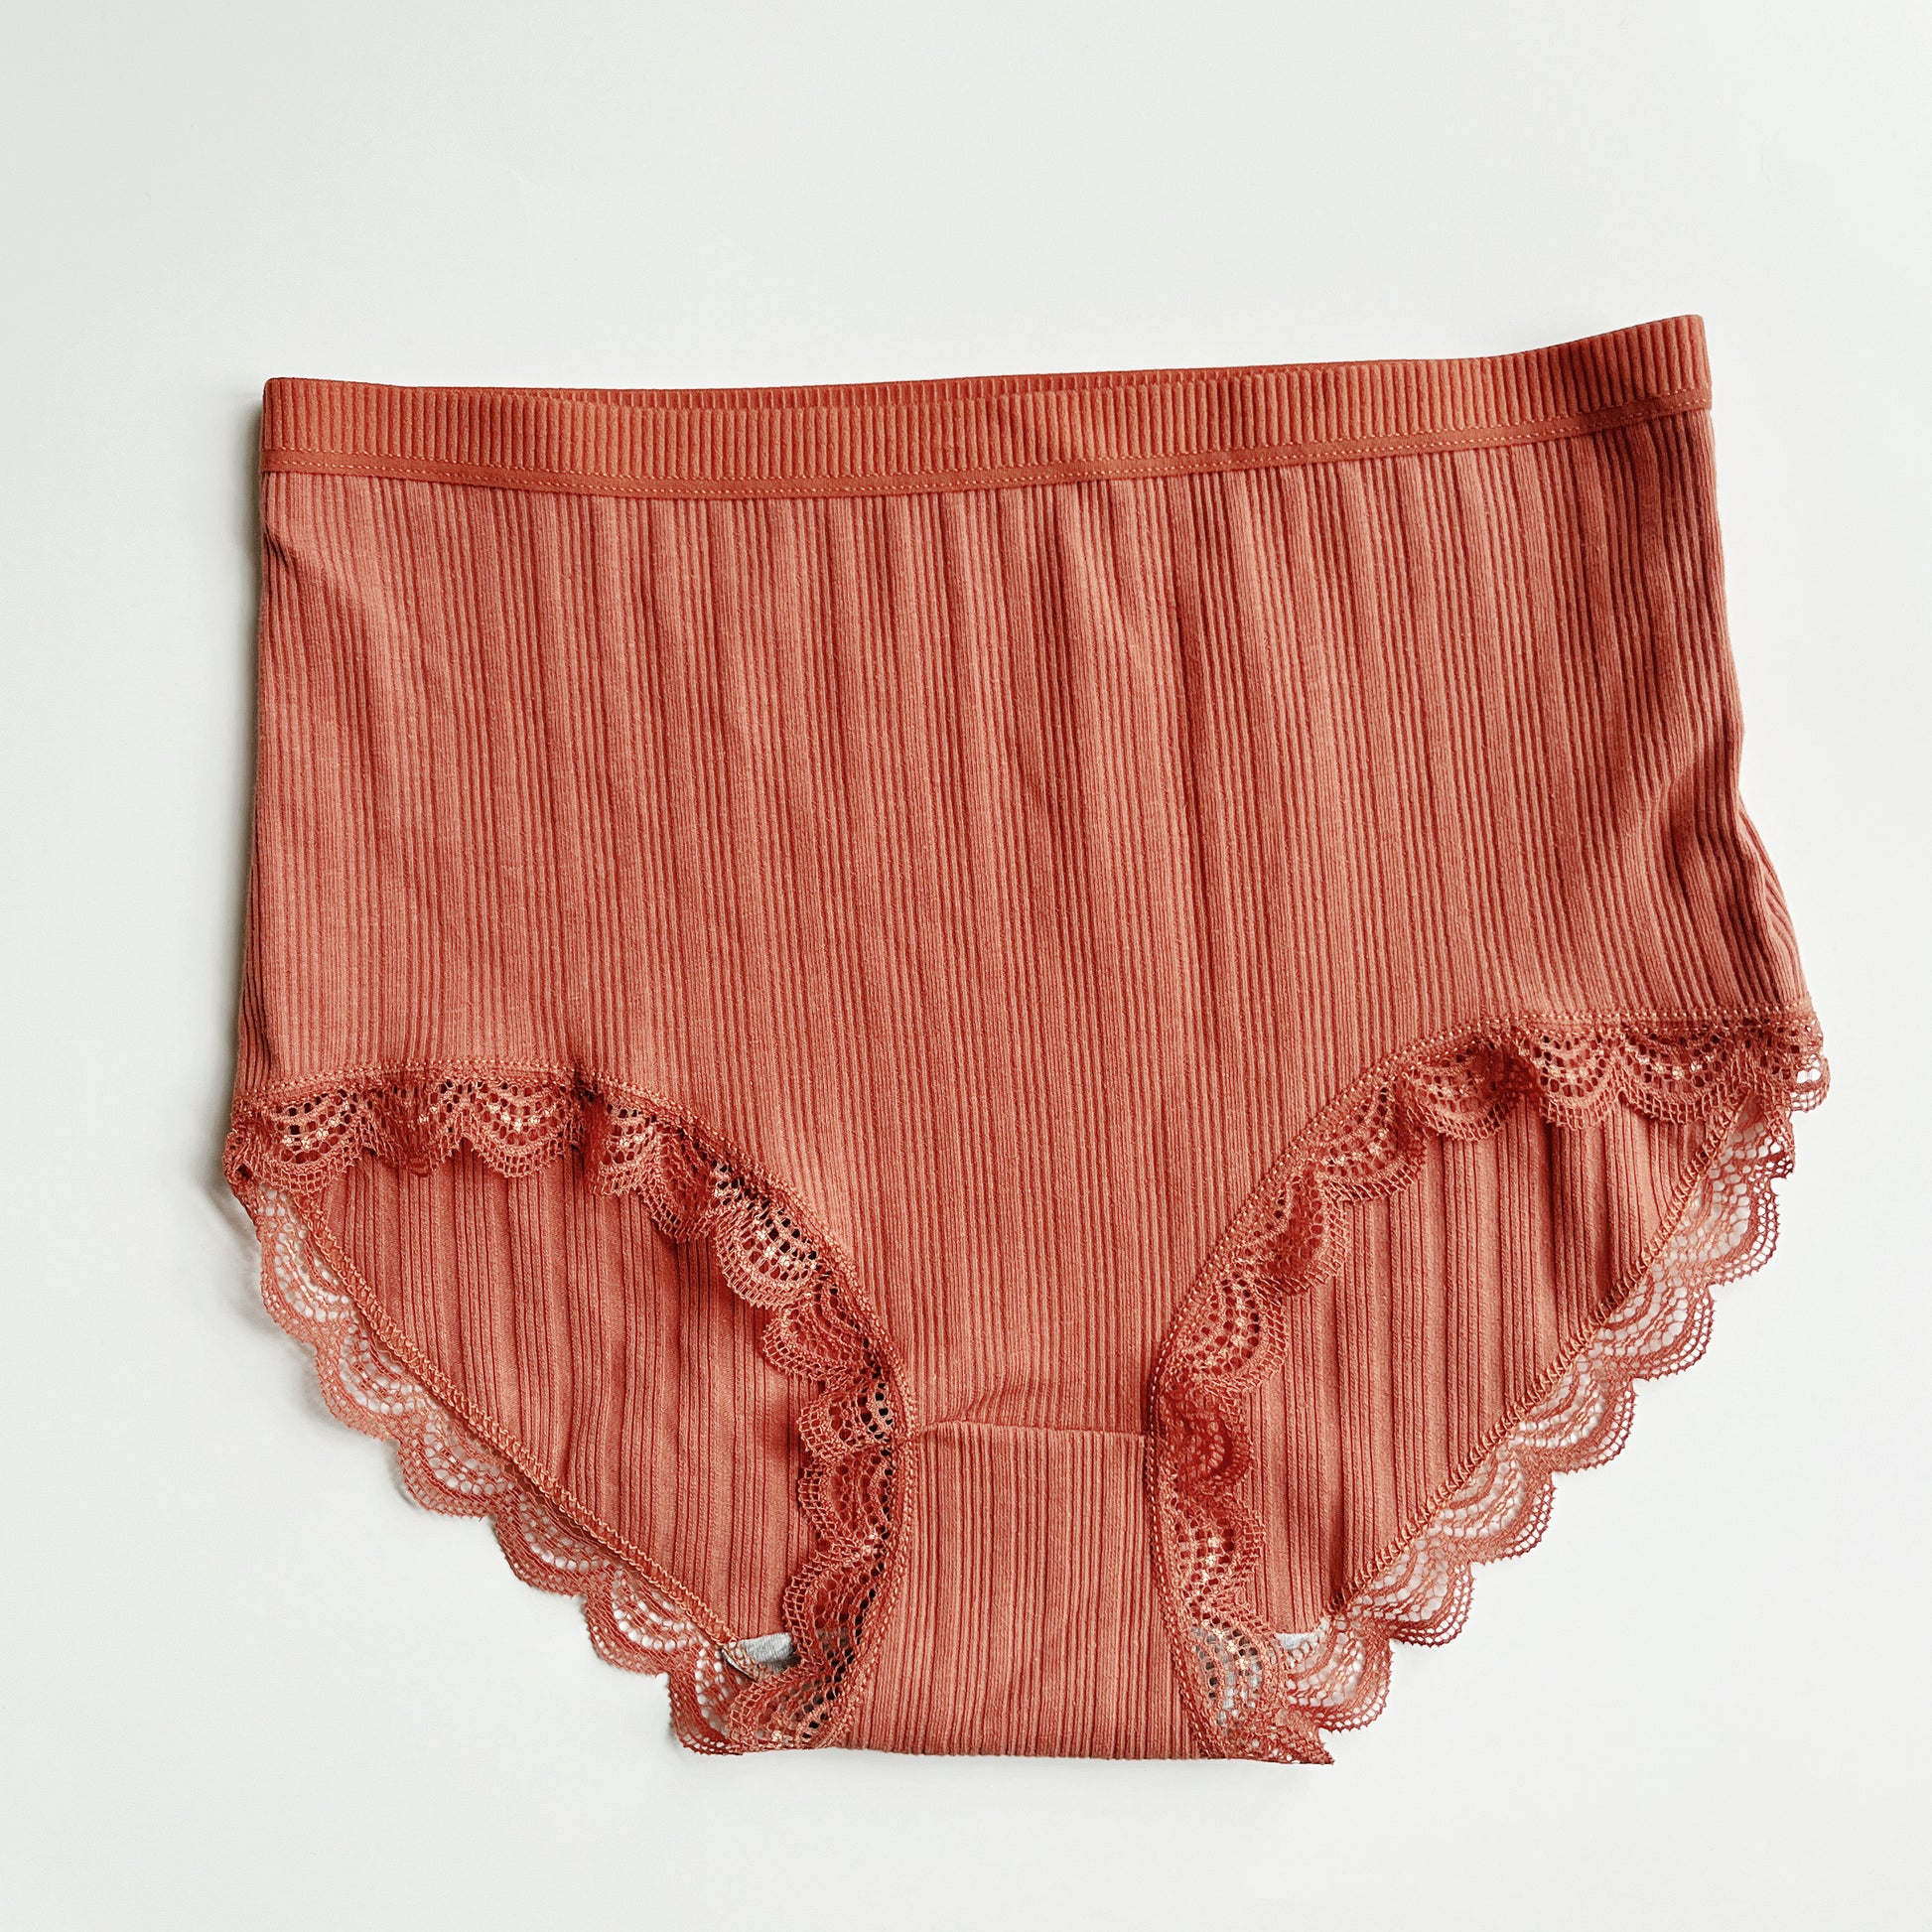 H&M Organic Cotton Panties for Women